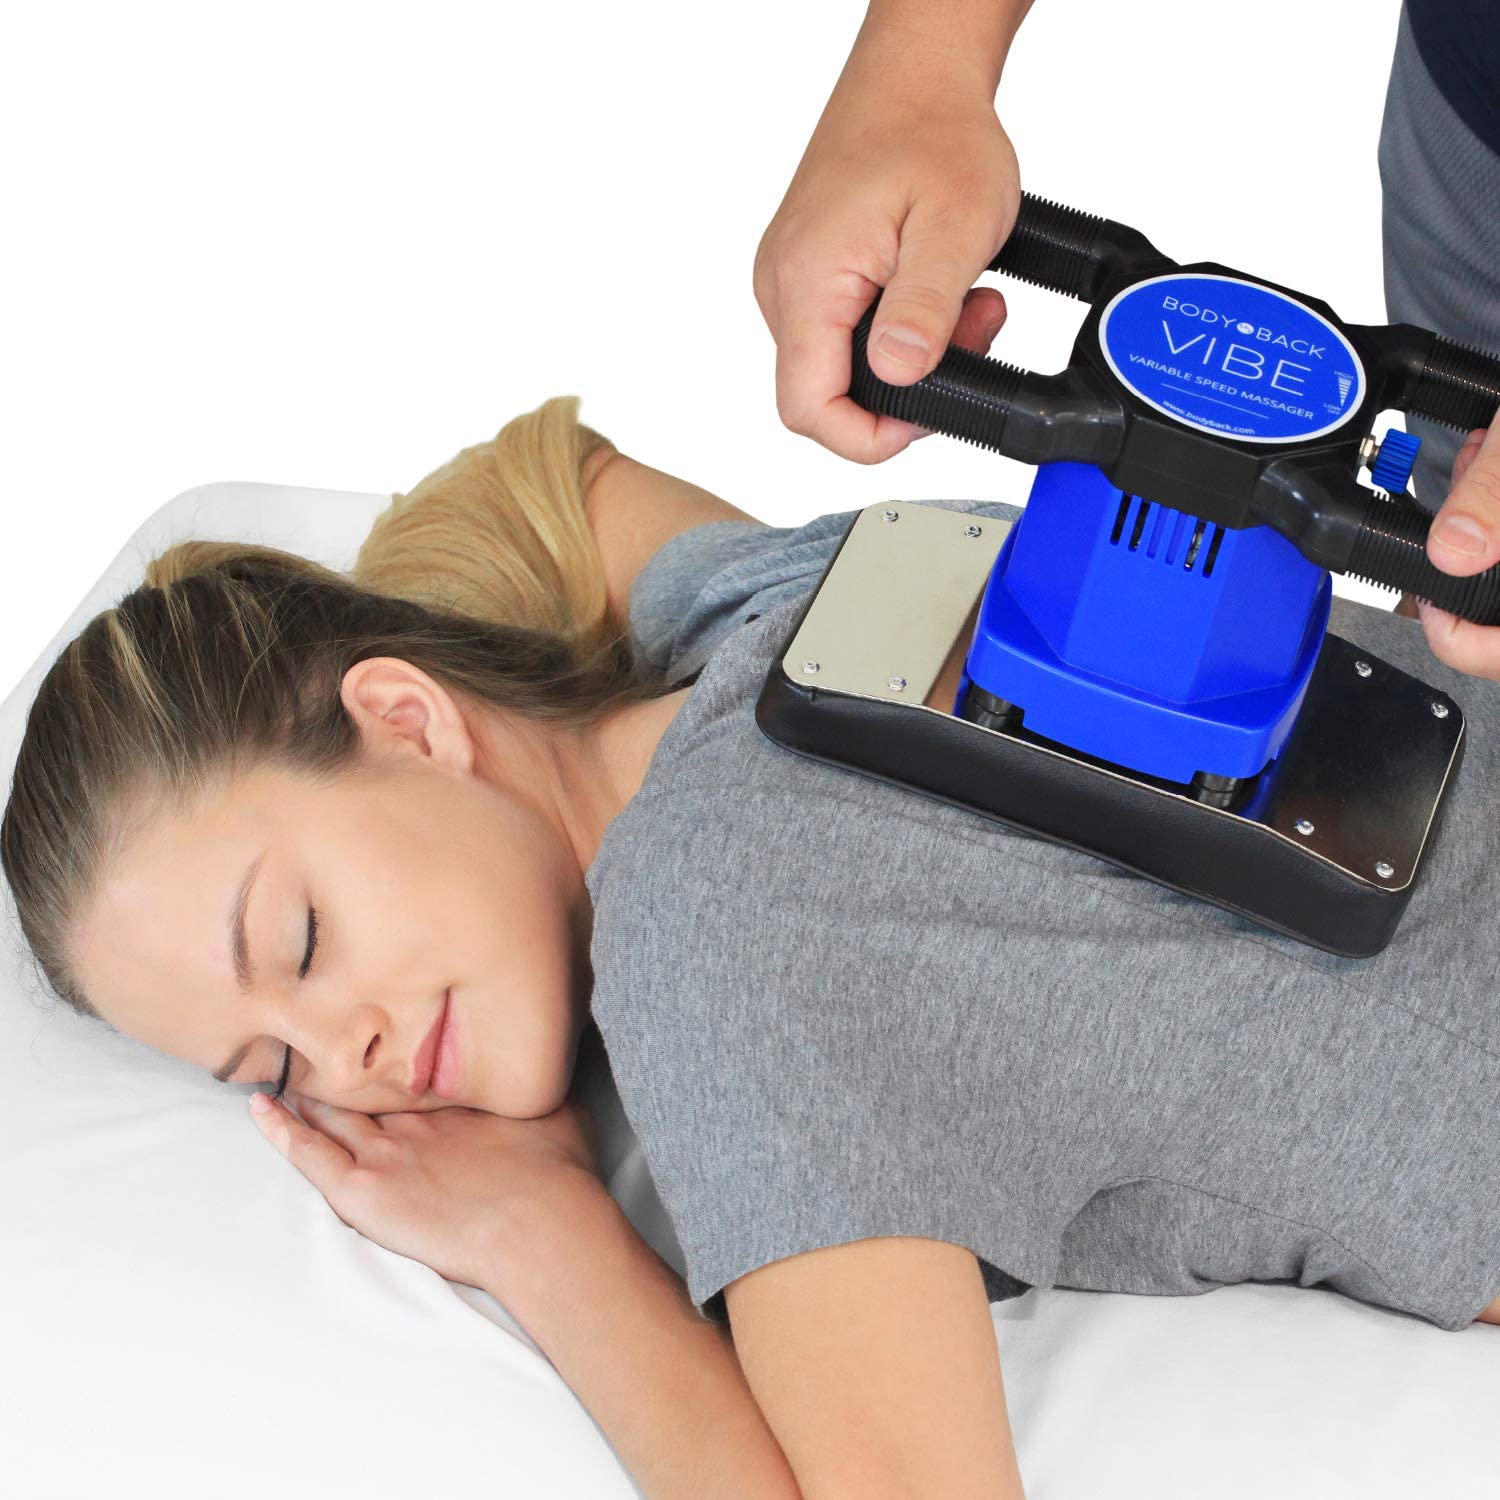 Body Back Vibe 2.0, Variable Speed Orbital Massager